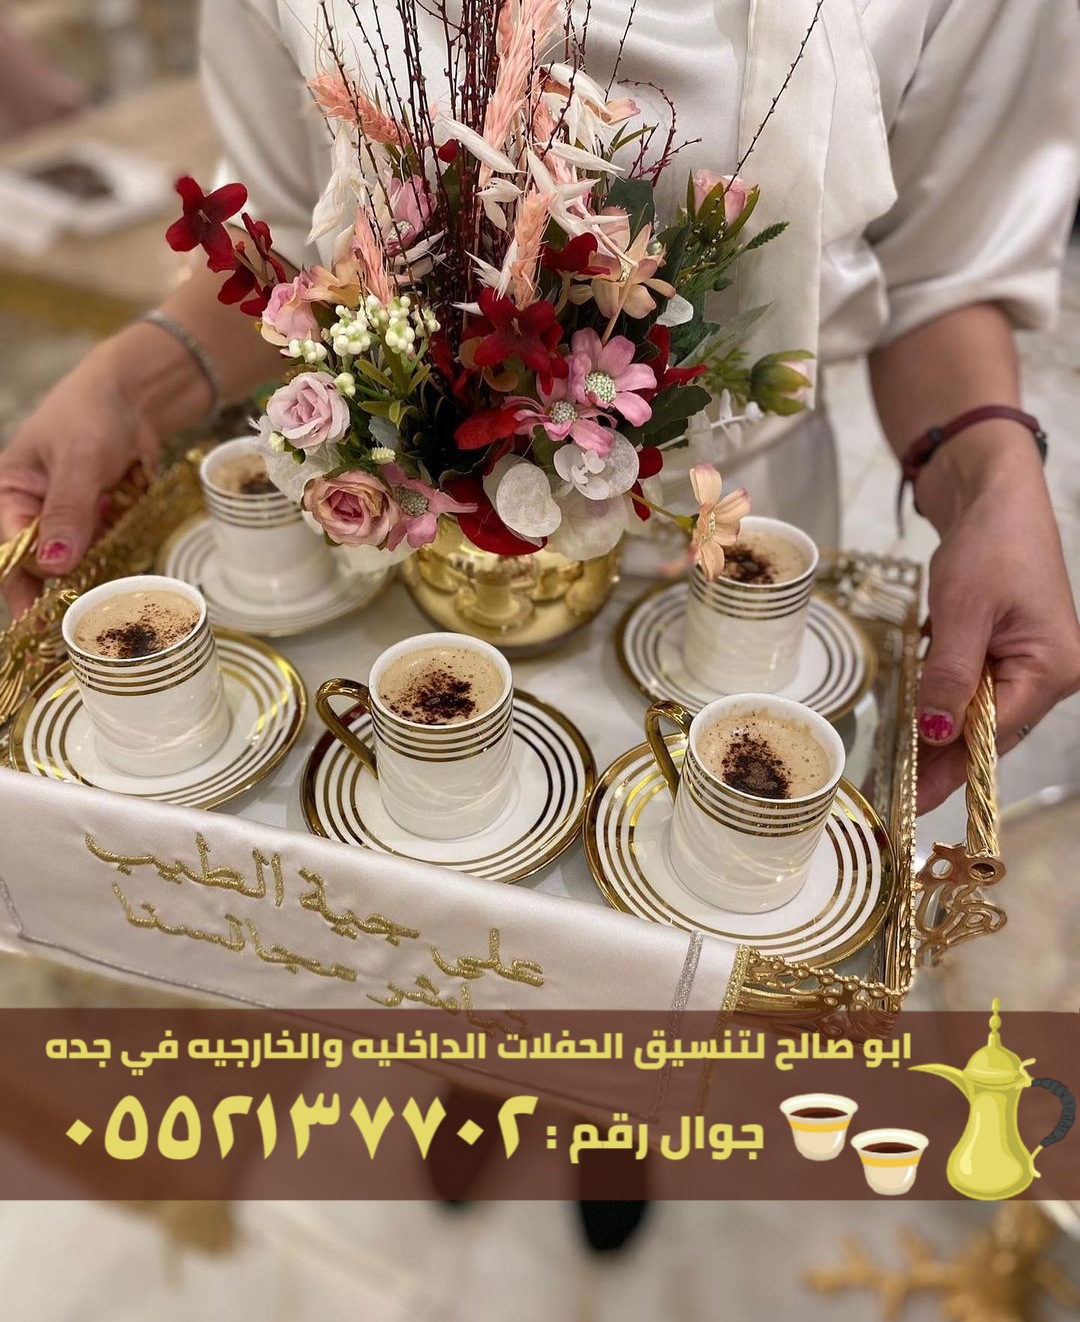 مباشرين قهوة و قهوجيين في جدة, 0552137702 P_2636fuksn1